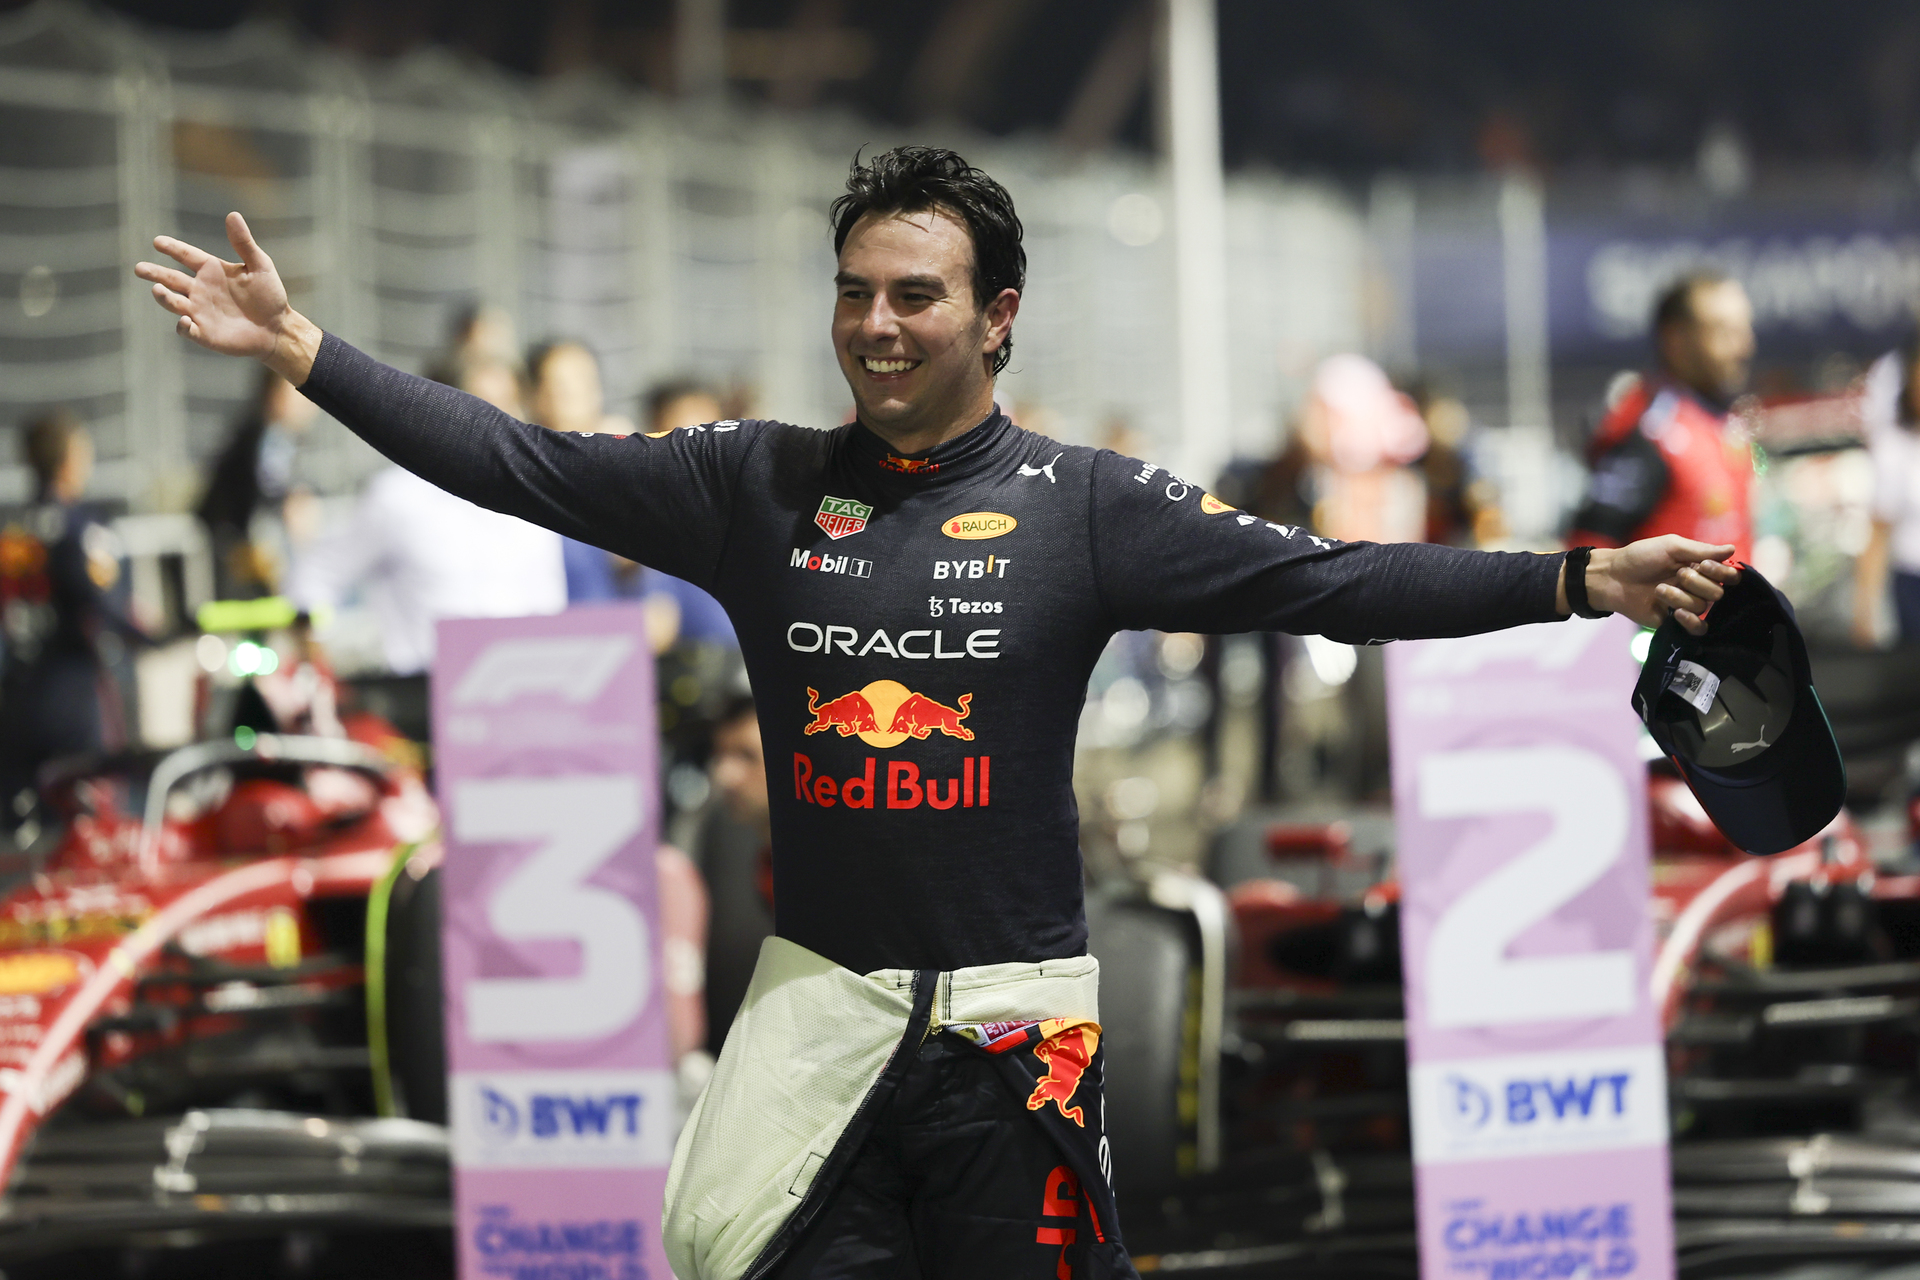 Sanción le hubiera quitado la victoria a 'Checo' Pérez en el Gran Premio de Singapur 